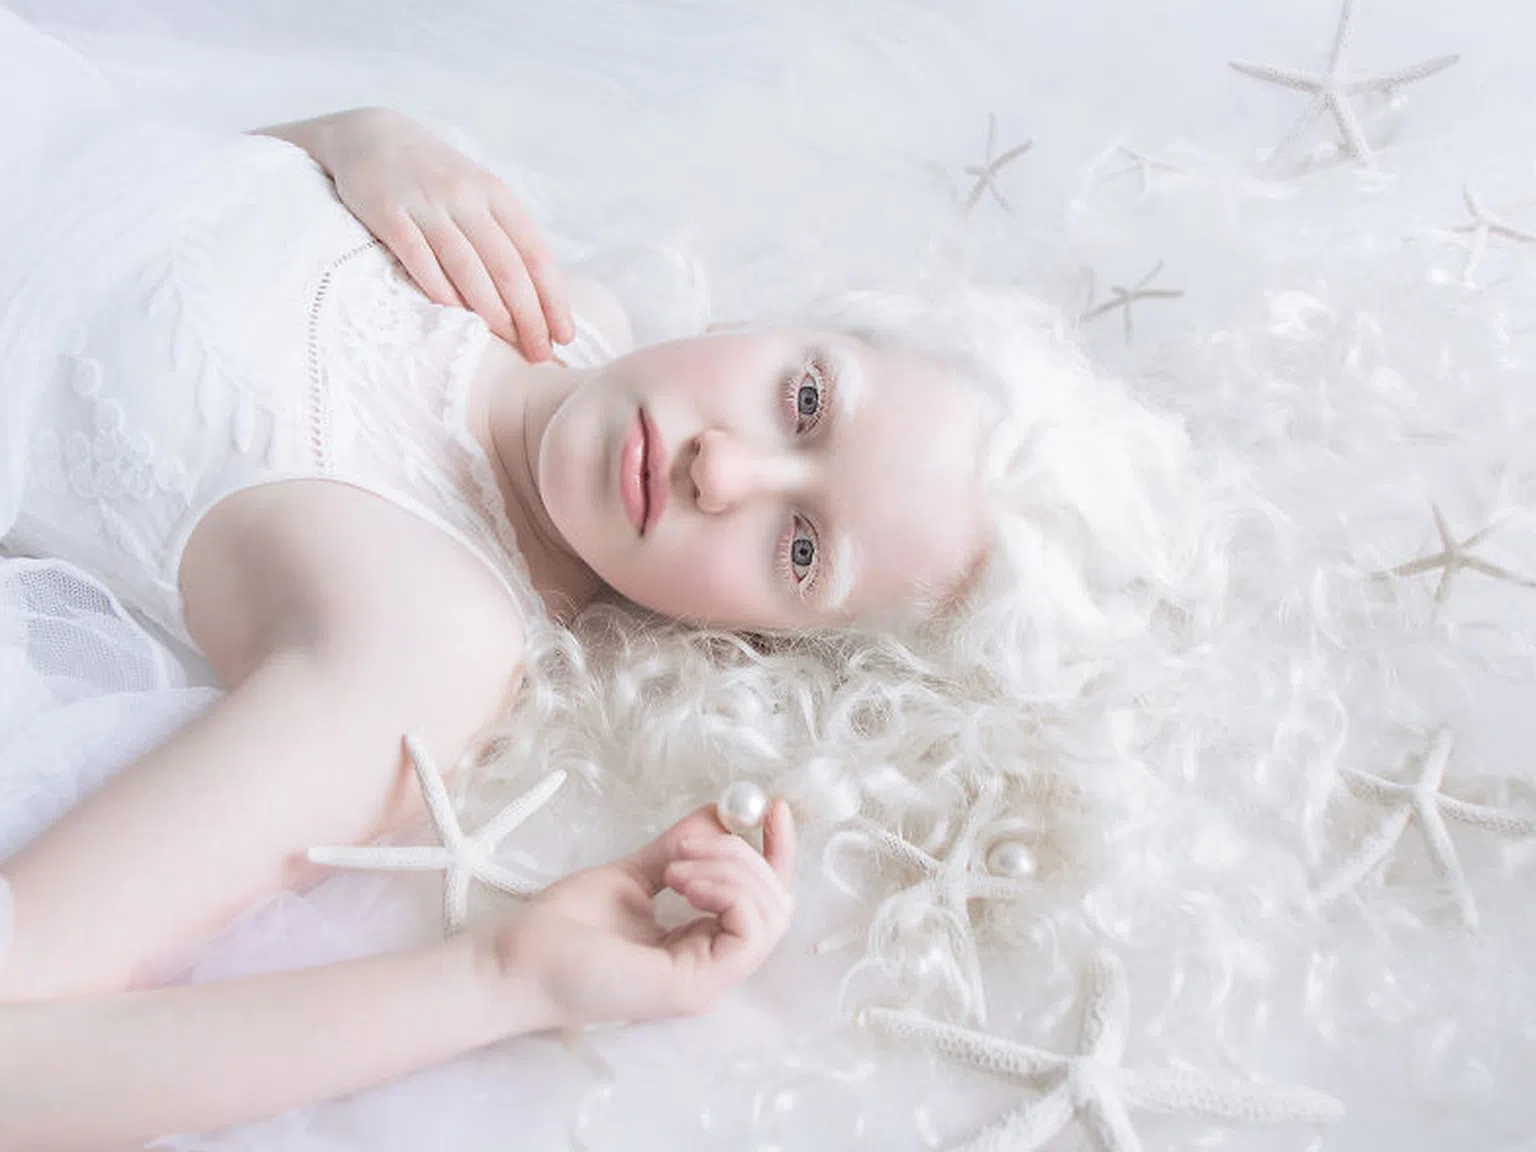 Хипнотизиращи кадри, уловили порцелановата красота на албиносите (СНИМКИ)